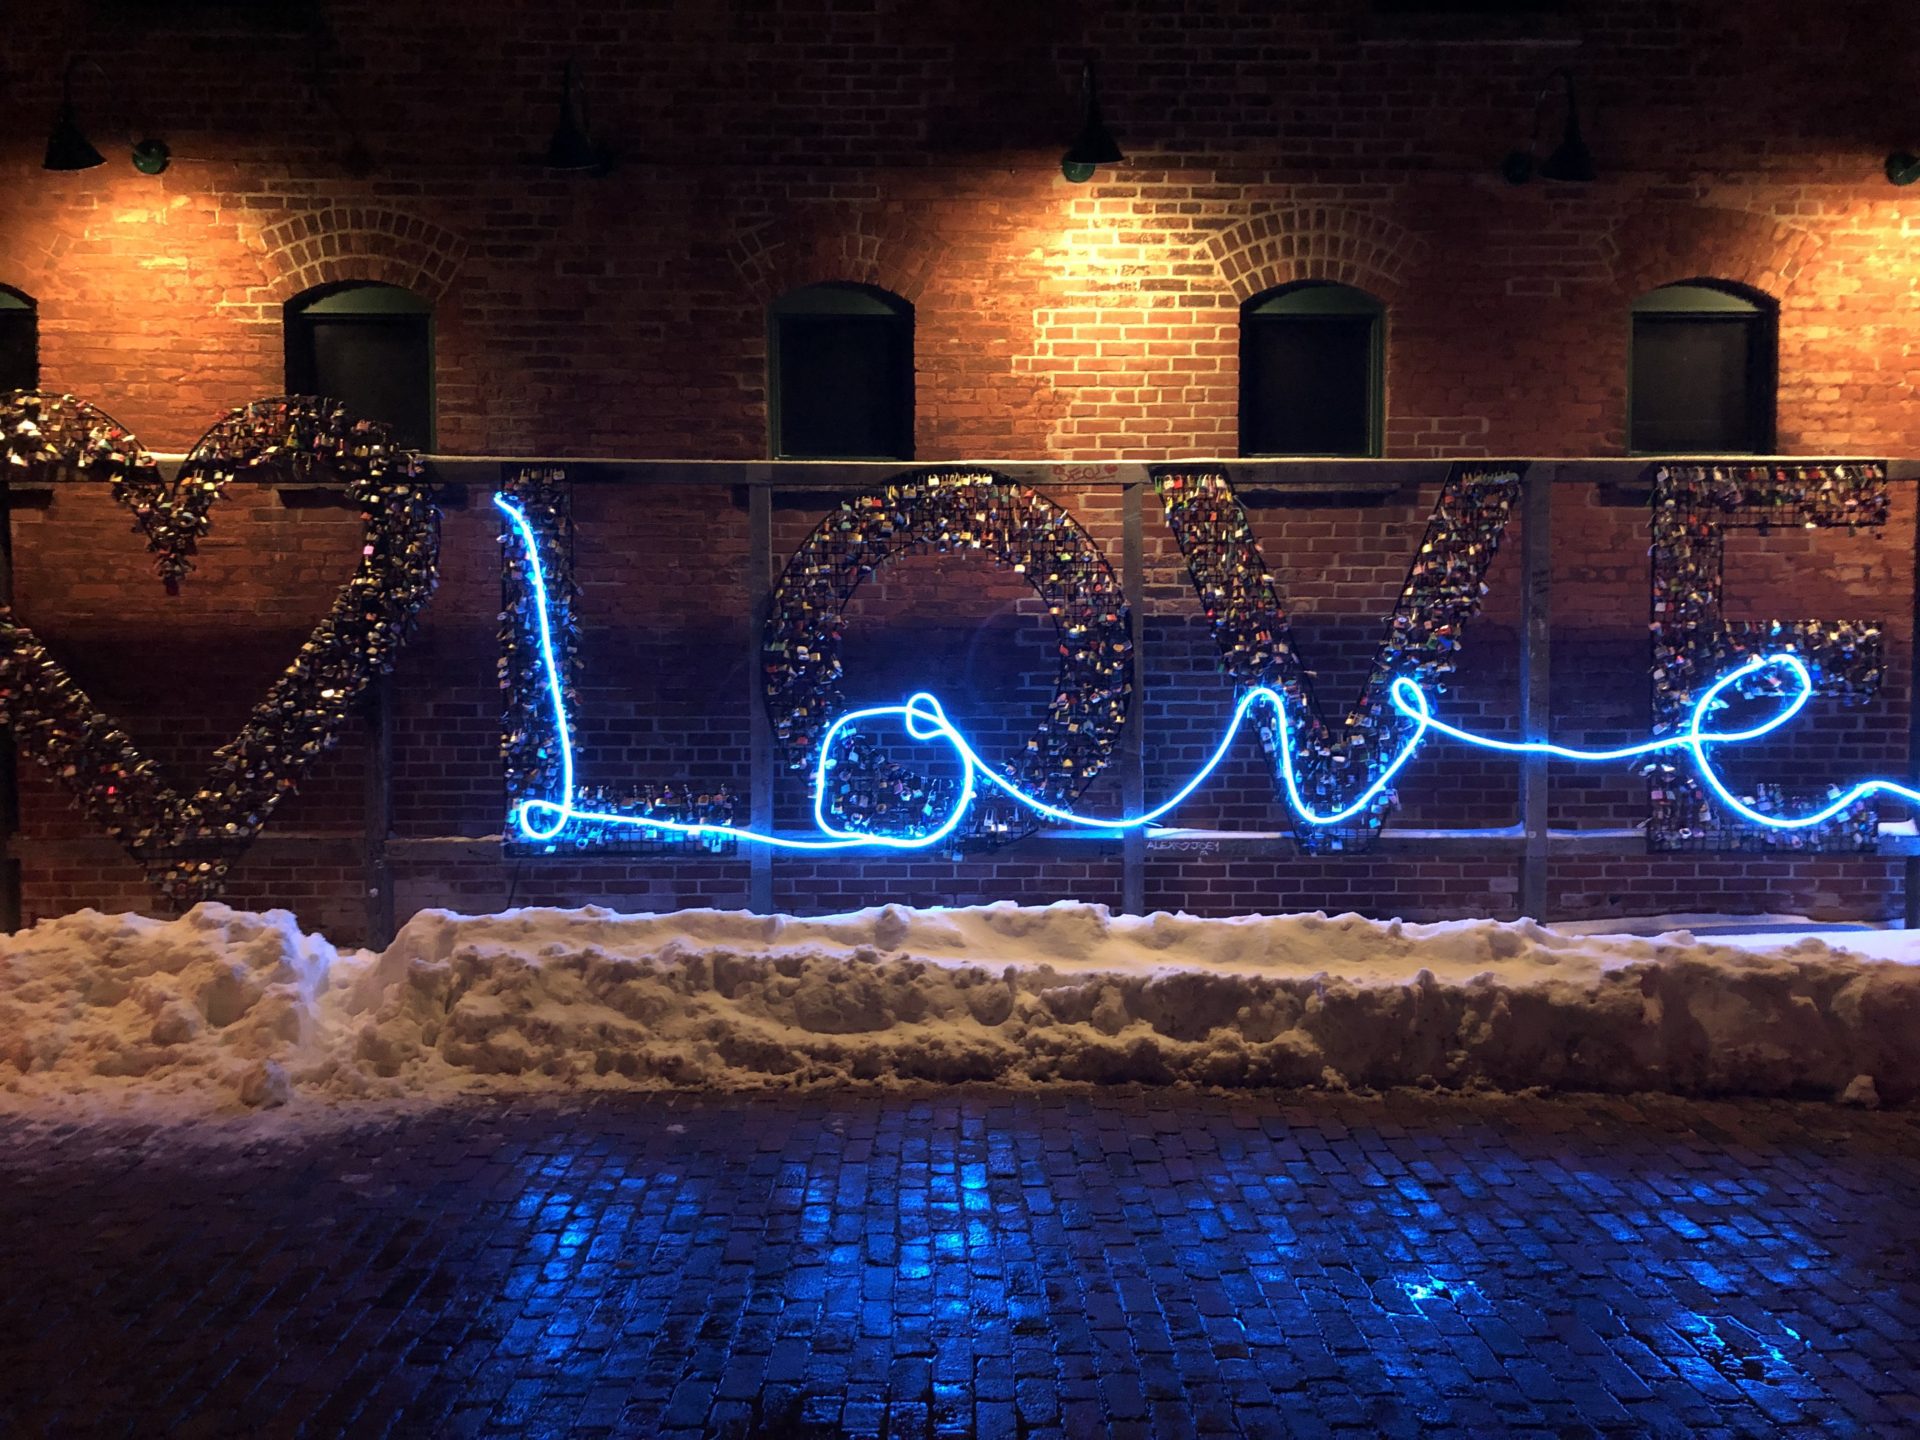 A light installation at Toronto Light Fest spells "Love" in blue light and has locks surrounding it.